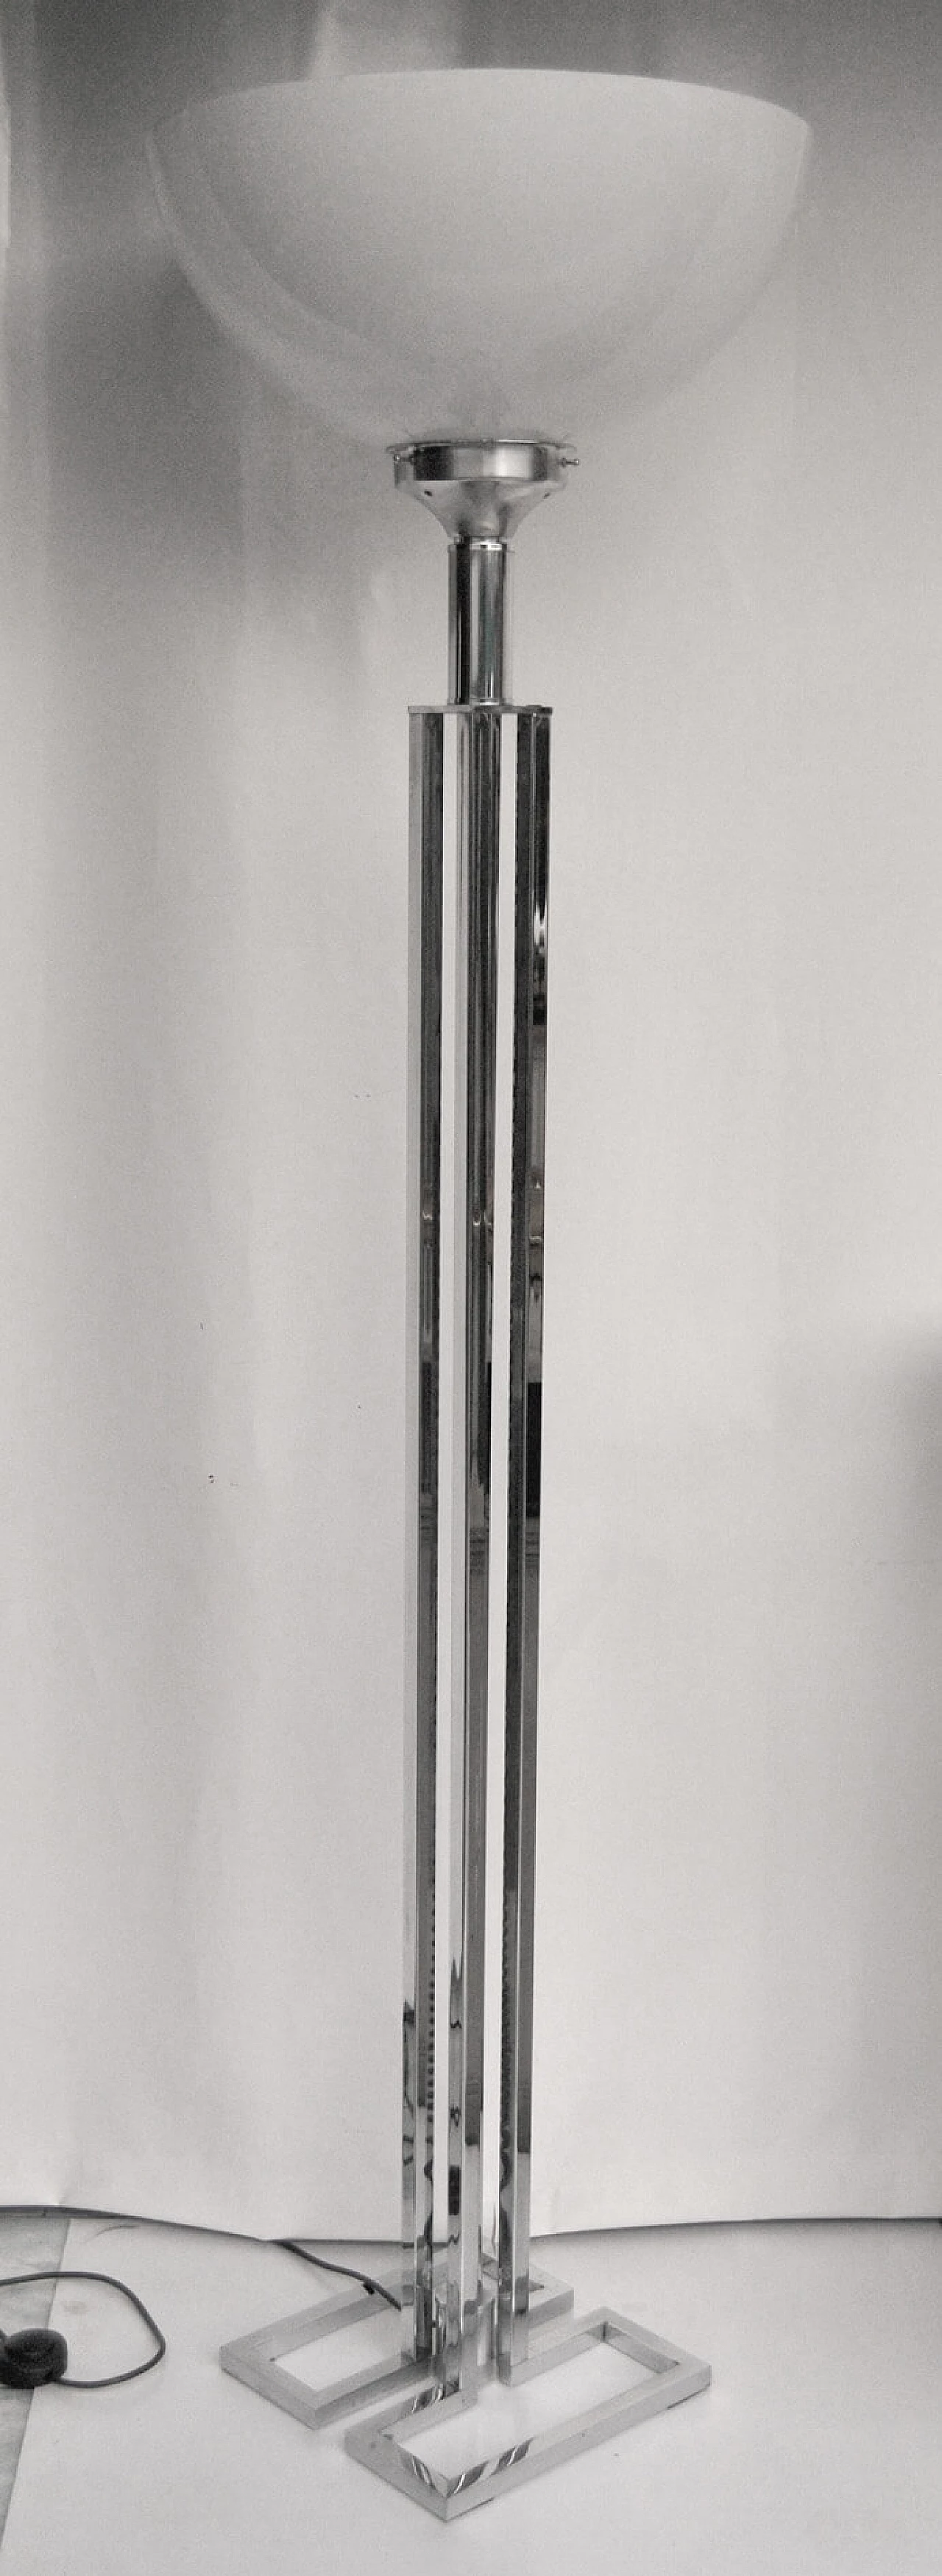 Chrome-plated floor lamp, 70s 1090869